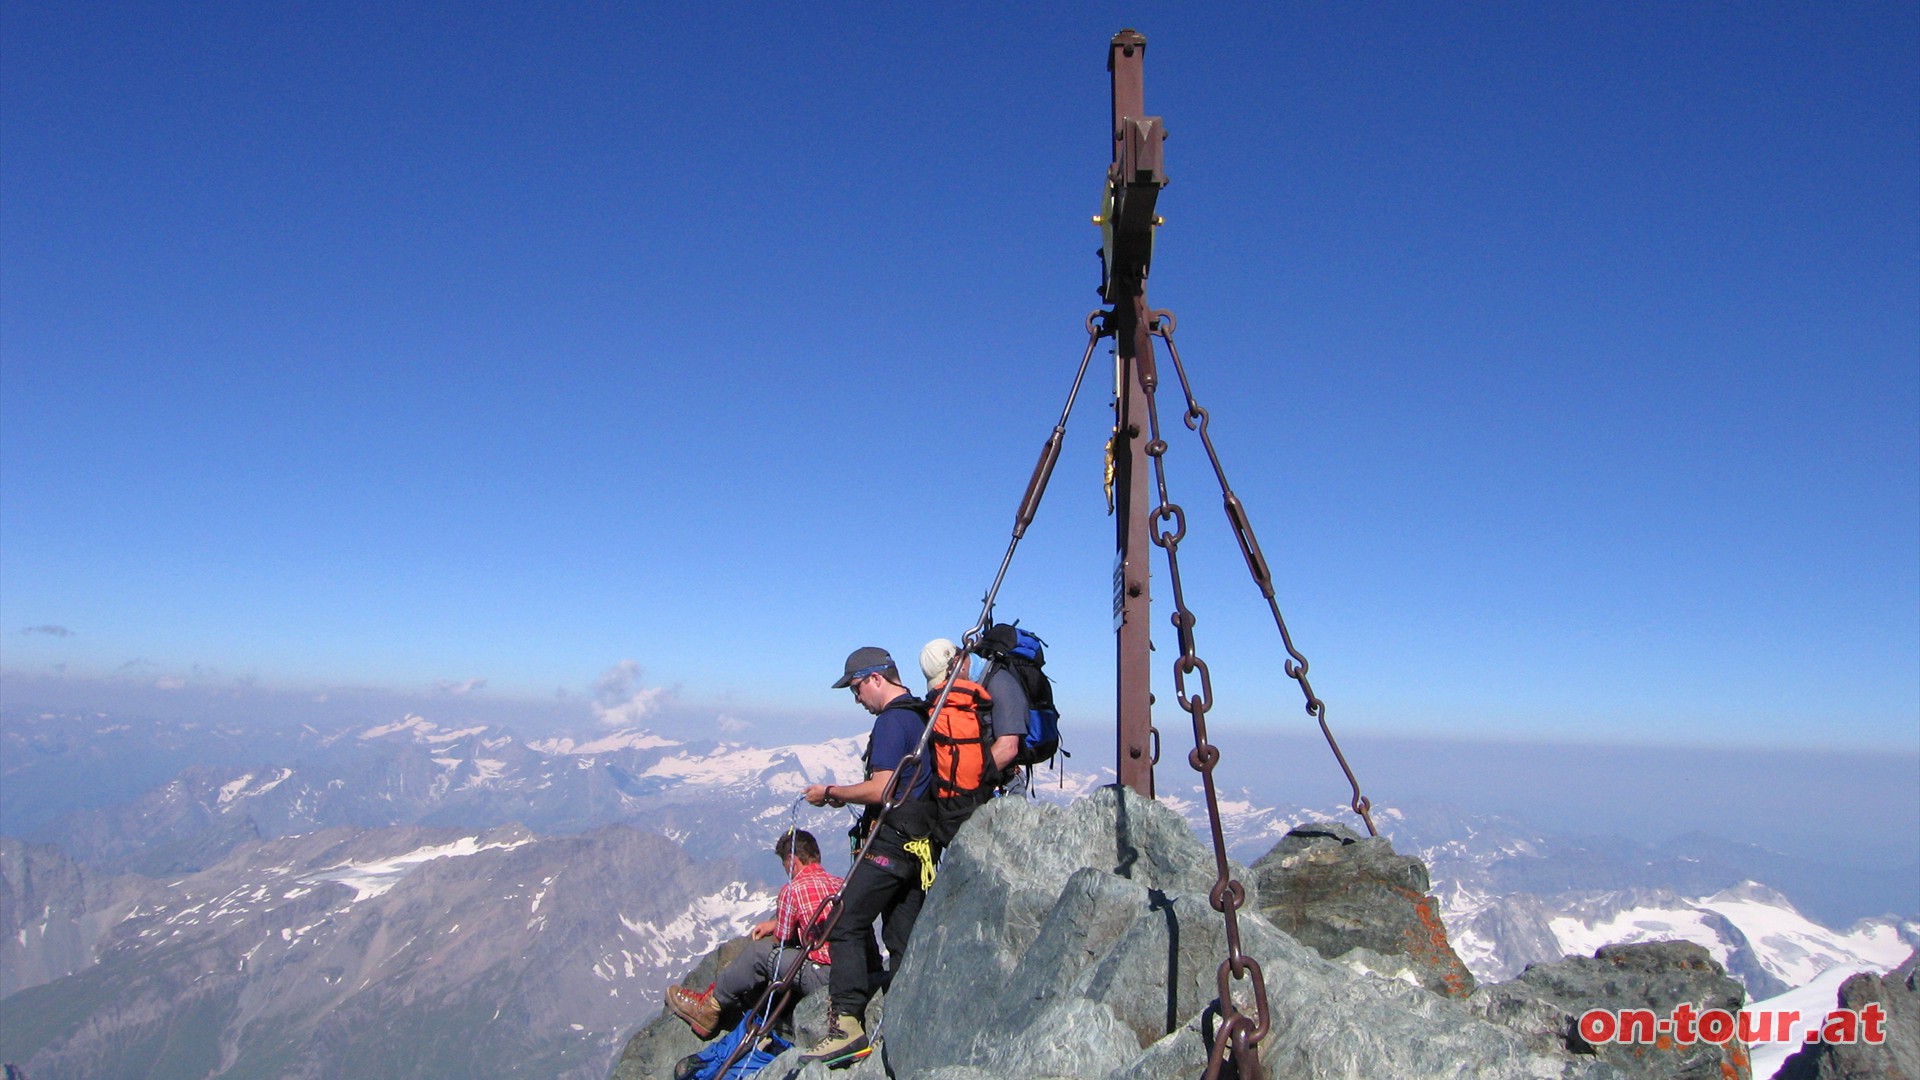 Das Dach Österreichs ist erreicht. Alle anderen Berge sind niedriger. Der Rundblick von Österreichs höchstem Berg ist atemberaubend.